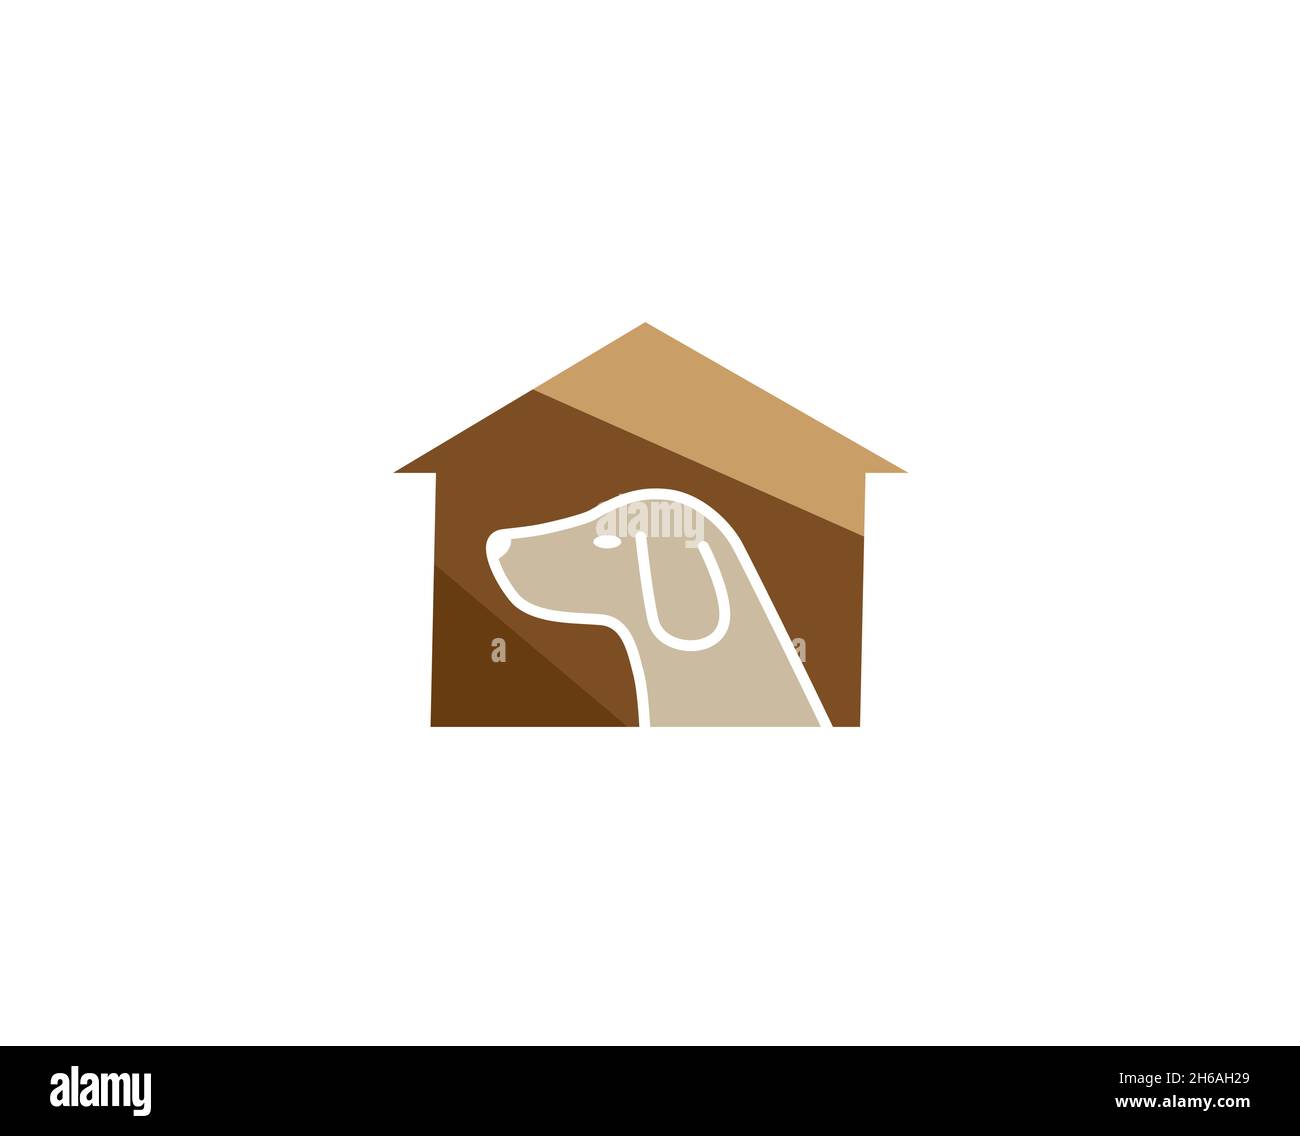 creative dog house logo vector symbol Stock Vector